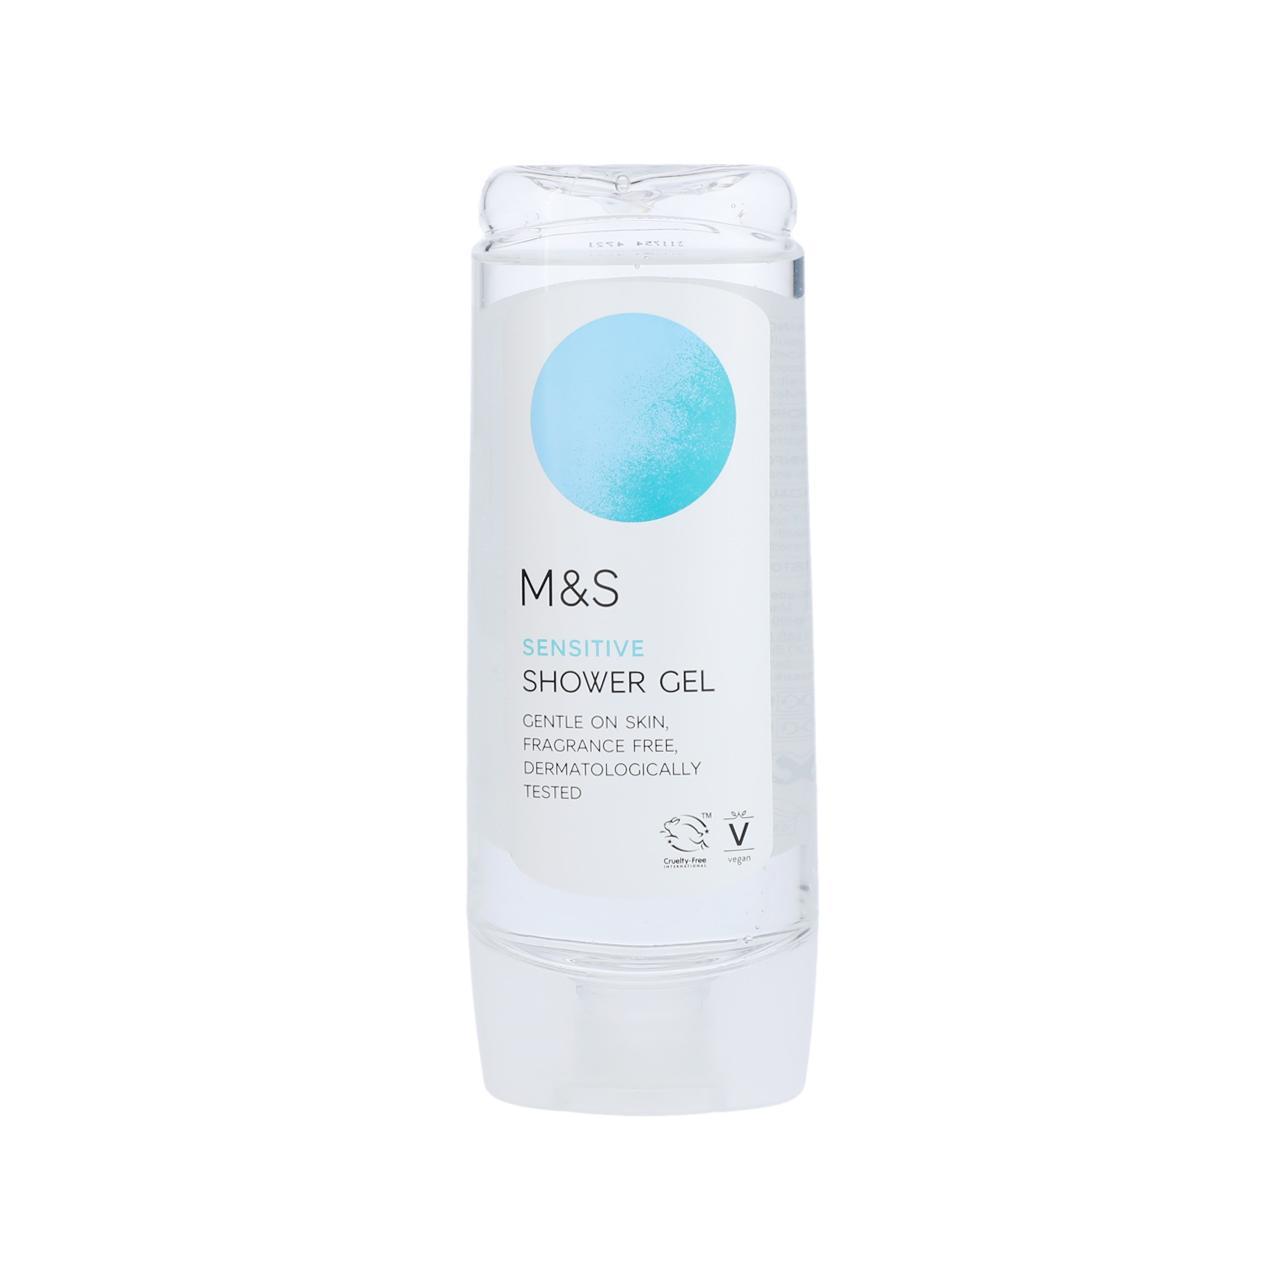 M&S Sensitive Shower Gel